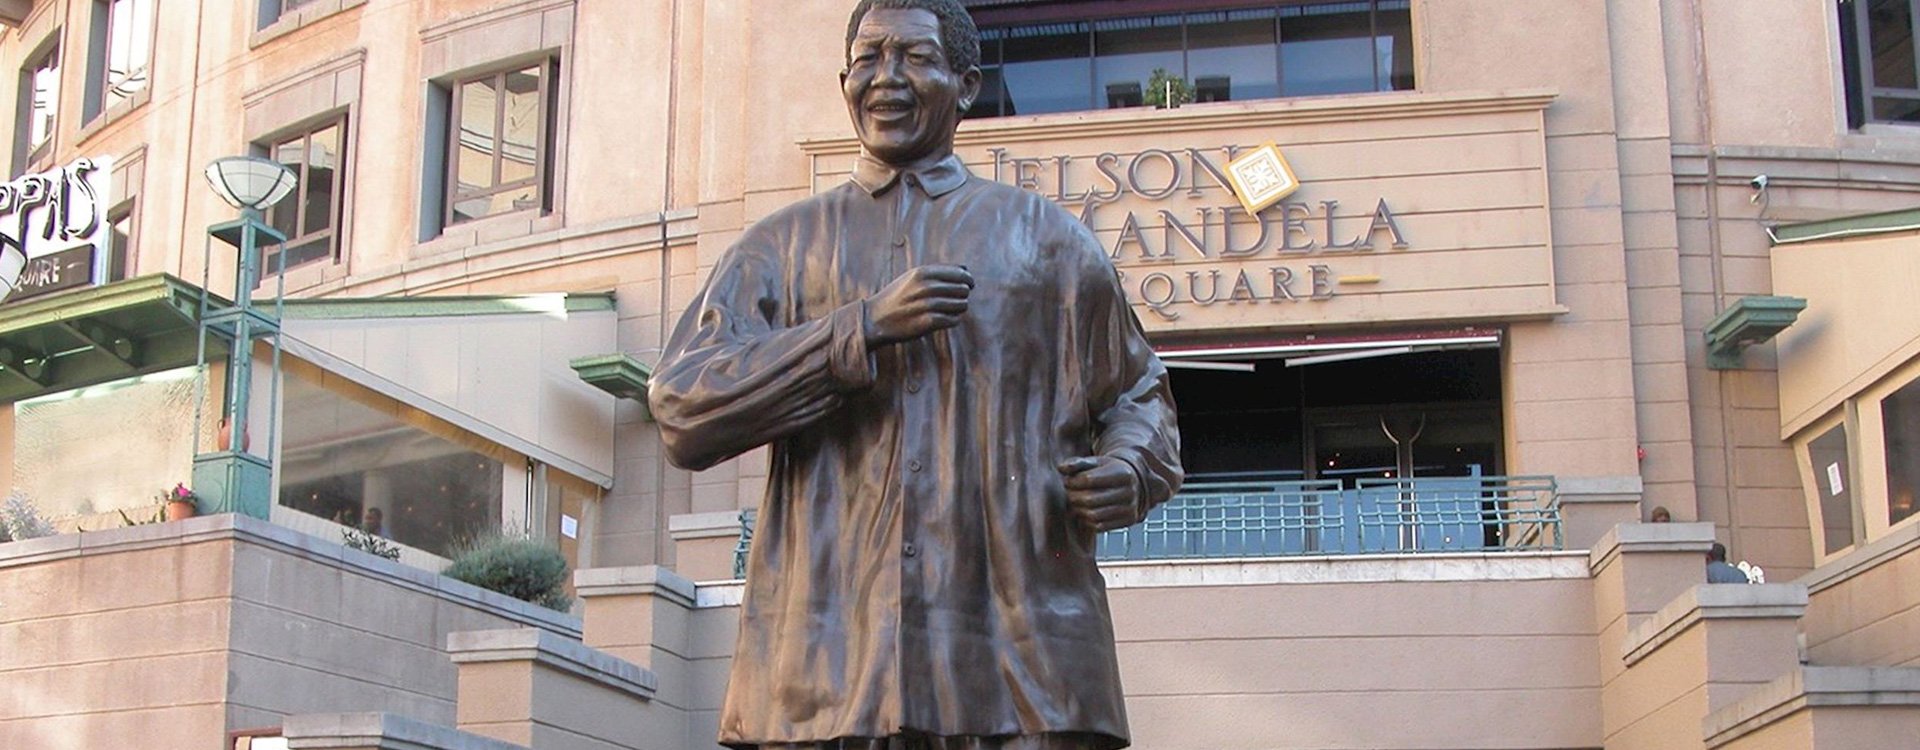 Johannesburg_Nelson Mandela Square